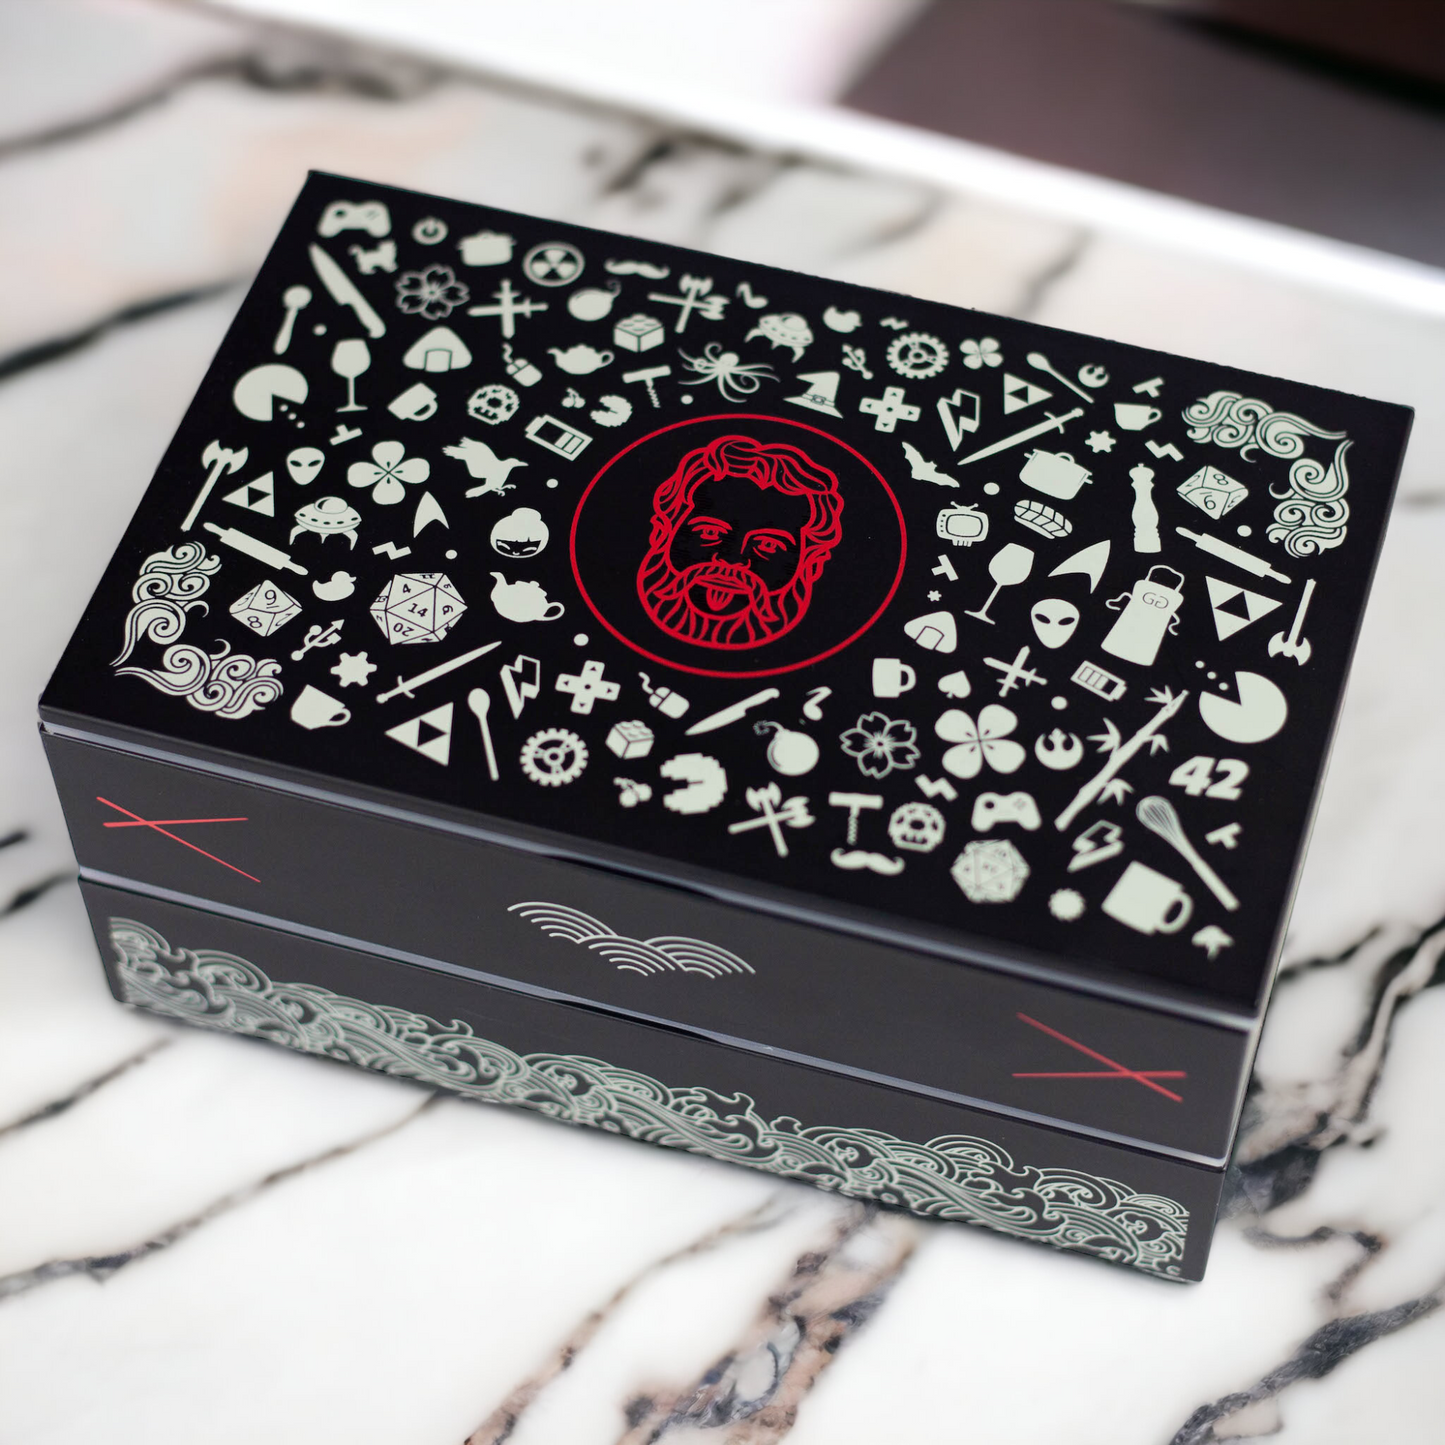 Gastronogeek Bento Box | 900mL